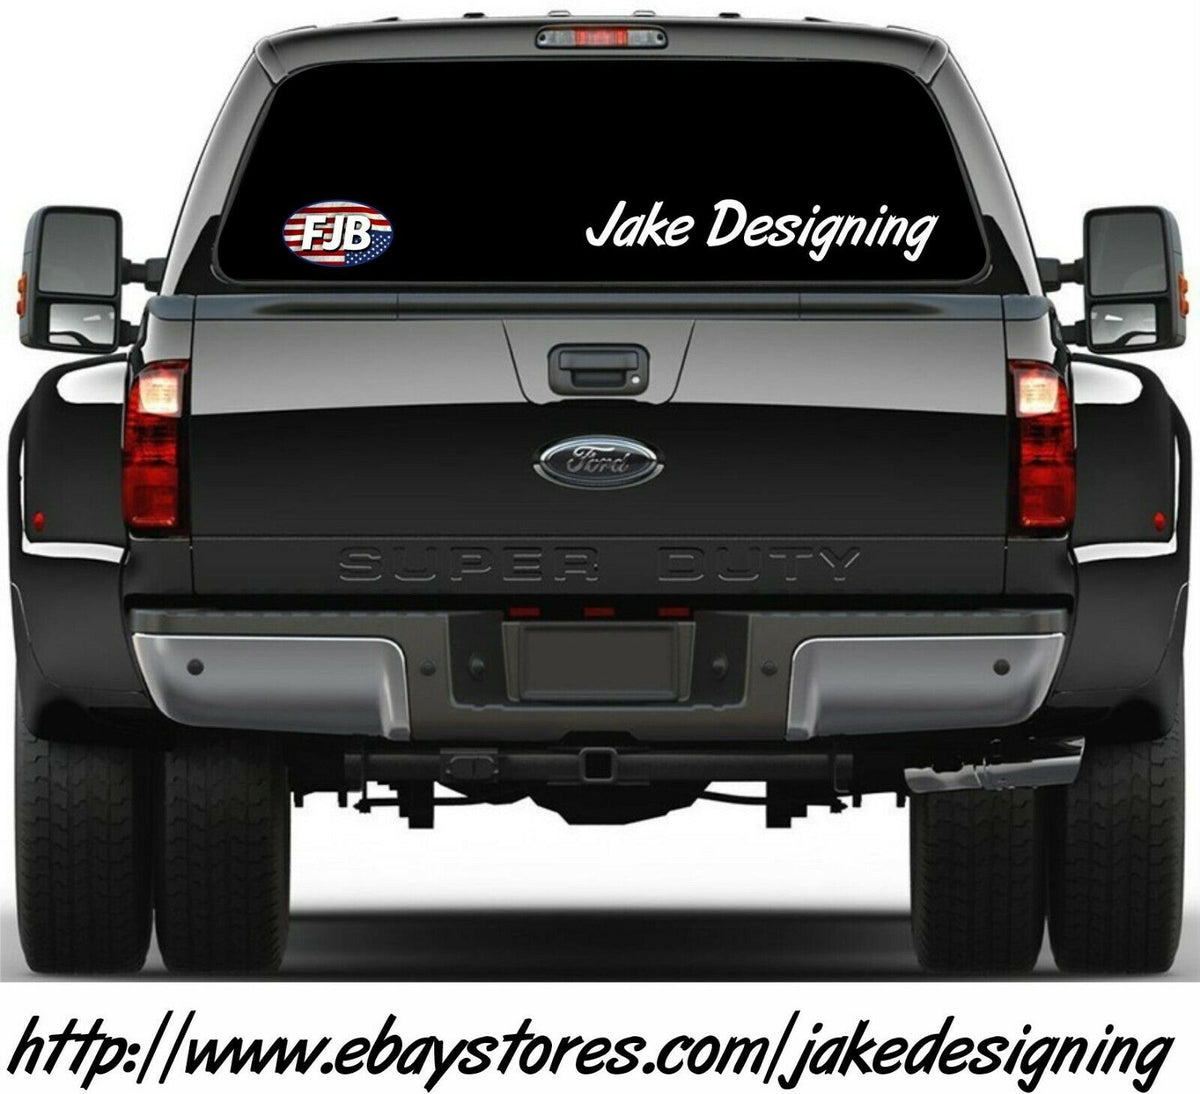 FJB ANTI JOE BIDEN Funny Bumper Sticker Decal 5" x 3" Decal FJB FU46 Trump 2024 - Powercall Sirens LLC